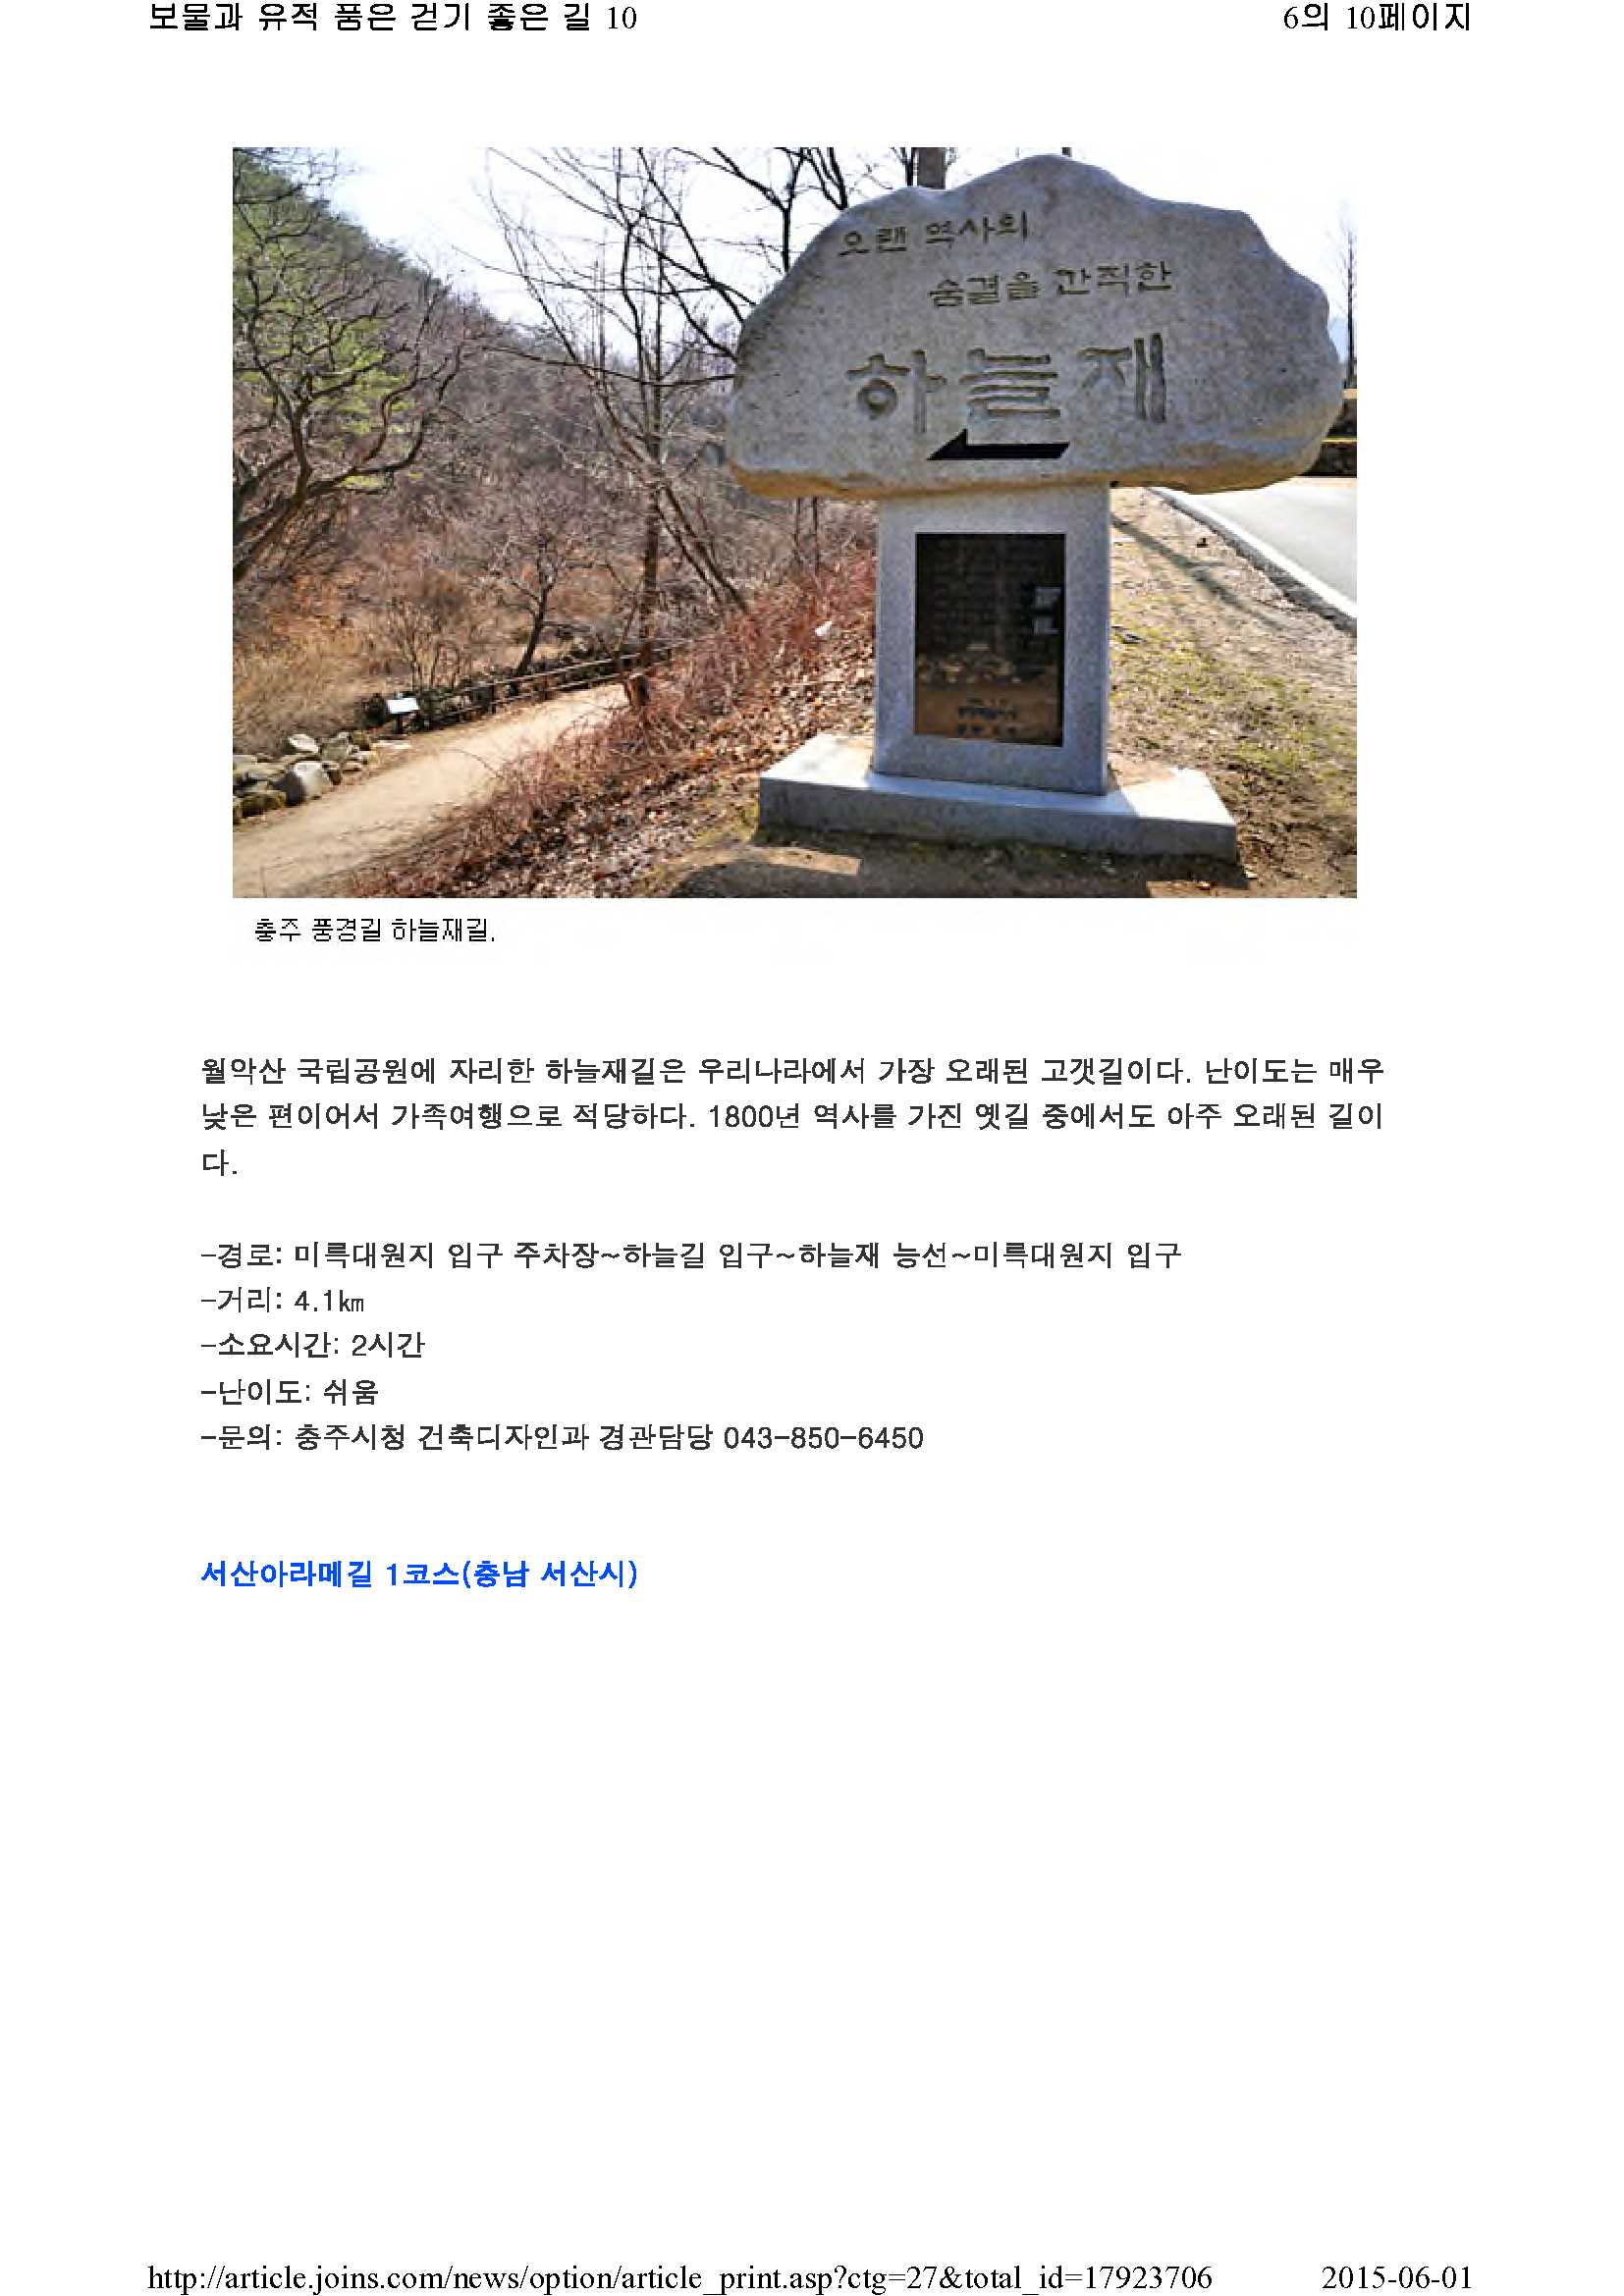 보물과 유적 품은 걷기 좋은 길 10(중앙일보)_6.jpg